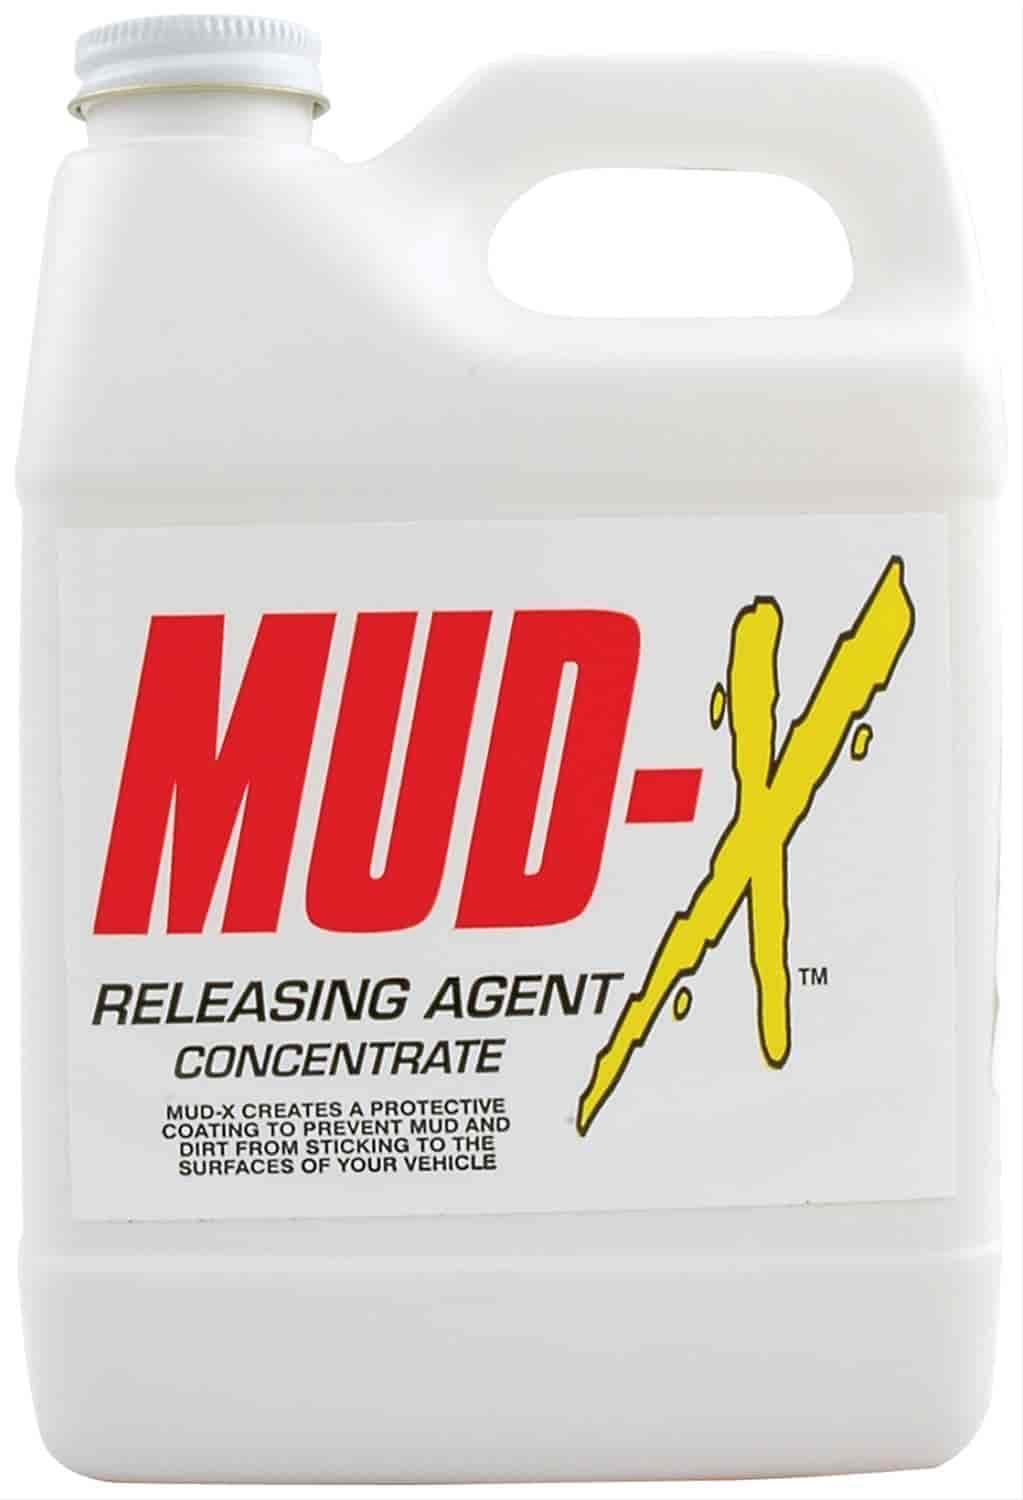 Mud-X Concentrate 1 Quart